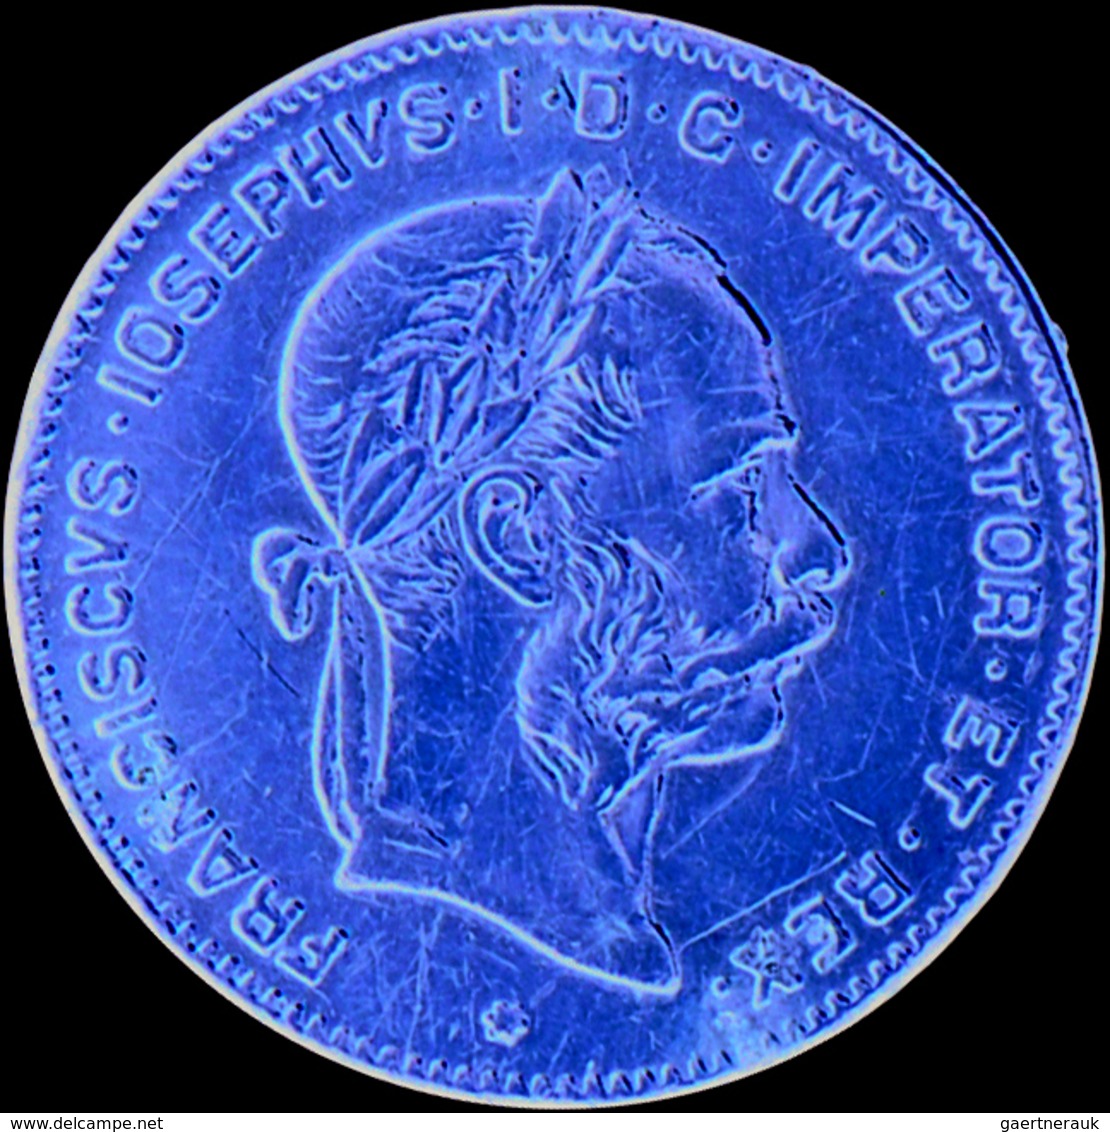 Österreich - Anlagegold: Franz Joseph I. 1848-1916: Lot 5 Goldmünzen: 4 Fl/10 Fr 1892, schön; 8 Fl/2